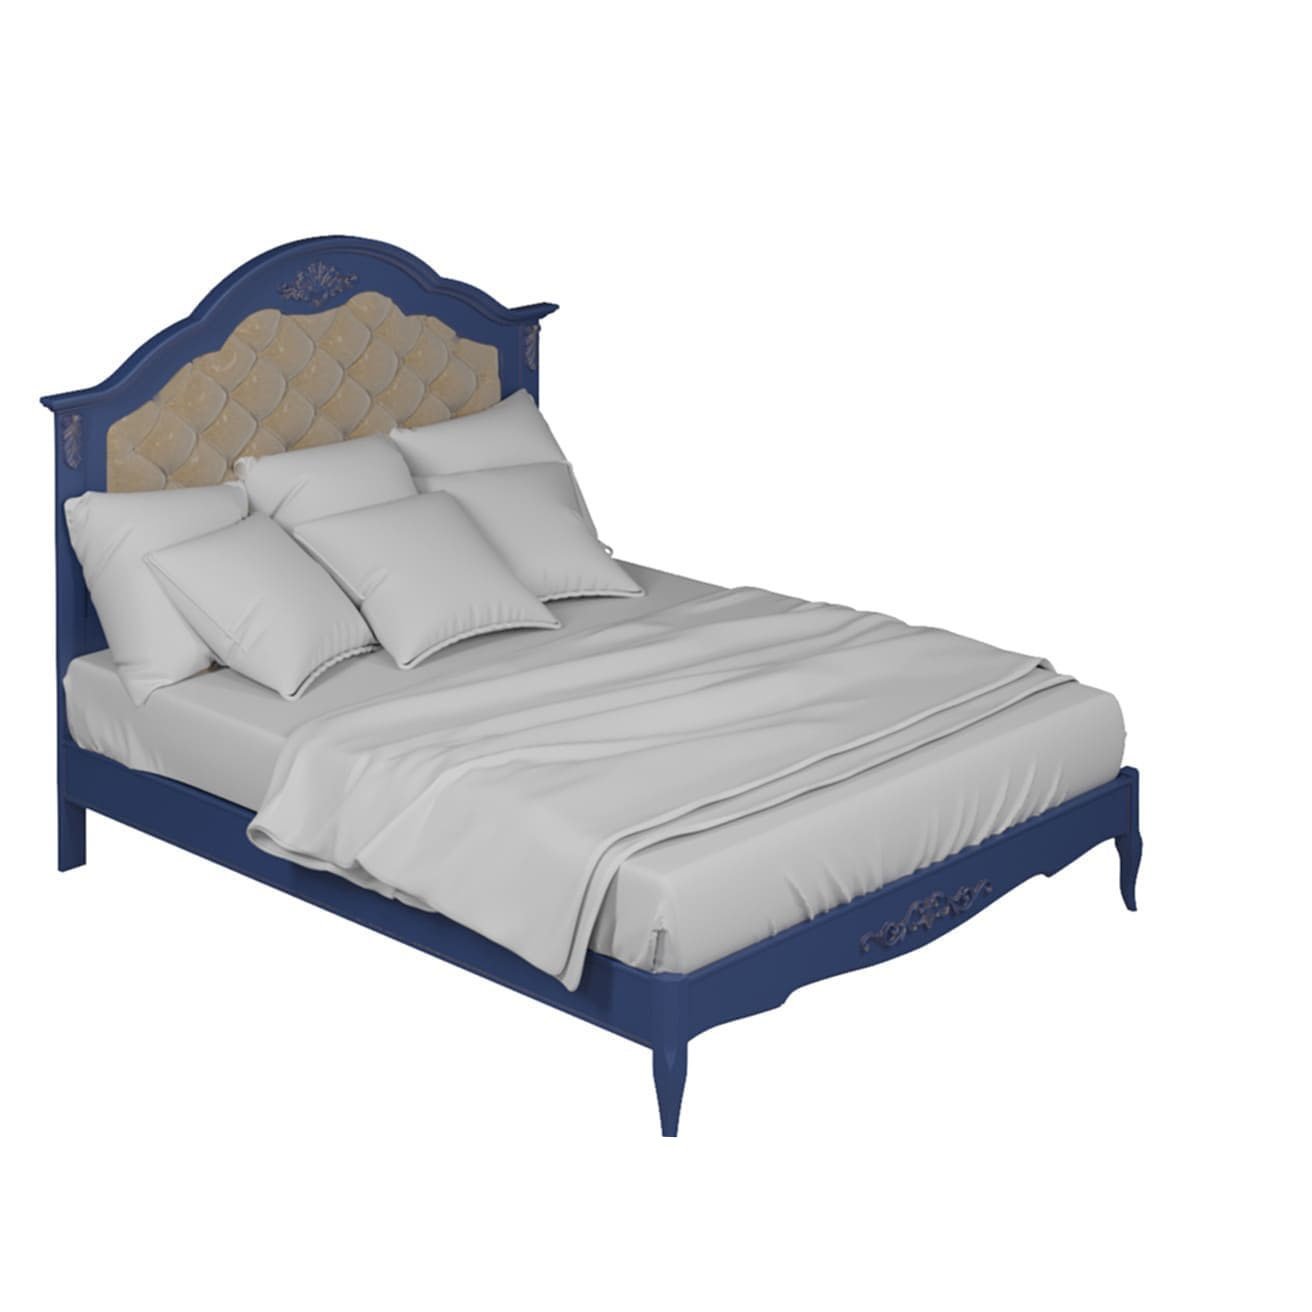 Кровать Aletan Provence, полуторная, 140x200 см, цвет: синий (B214IN)B214IN